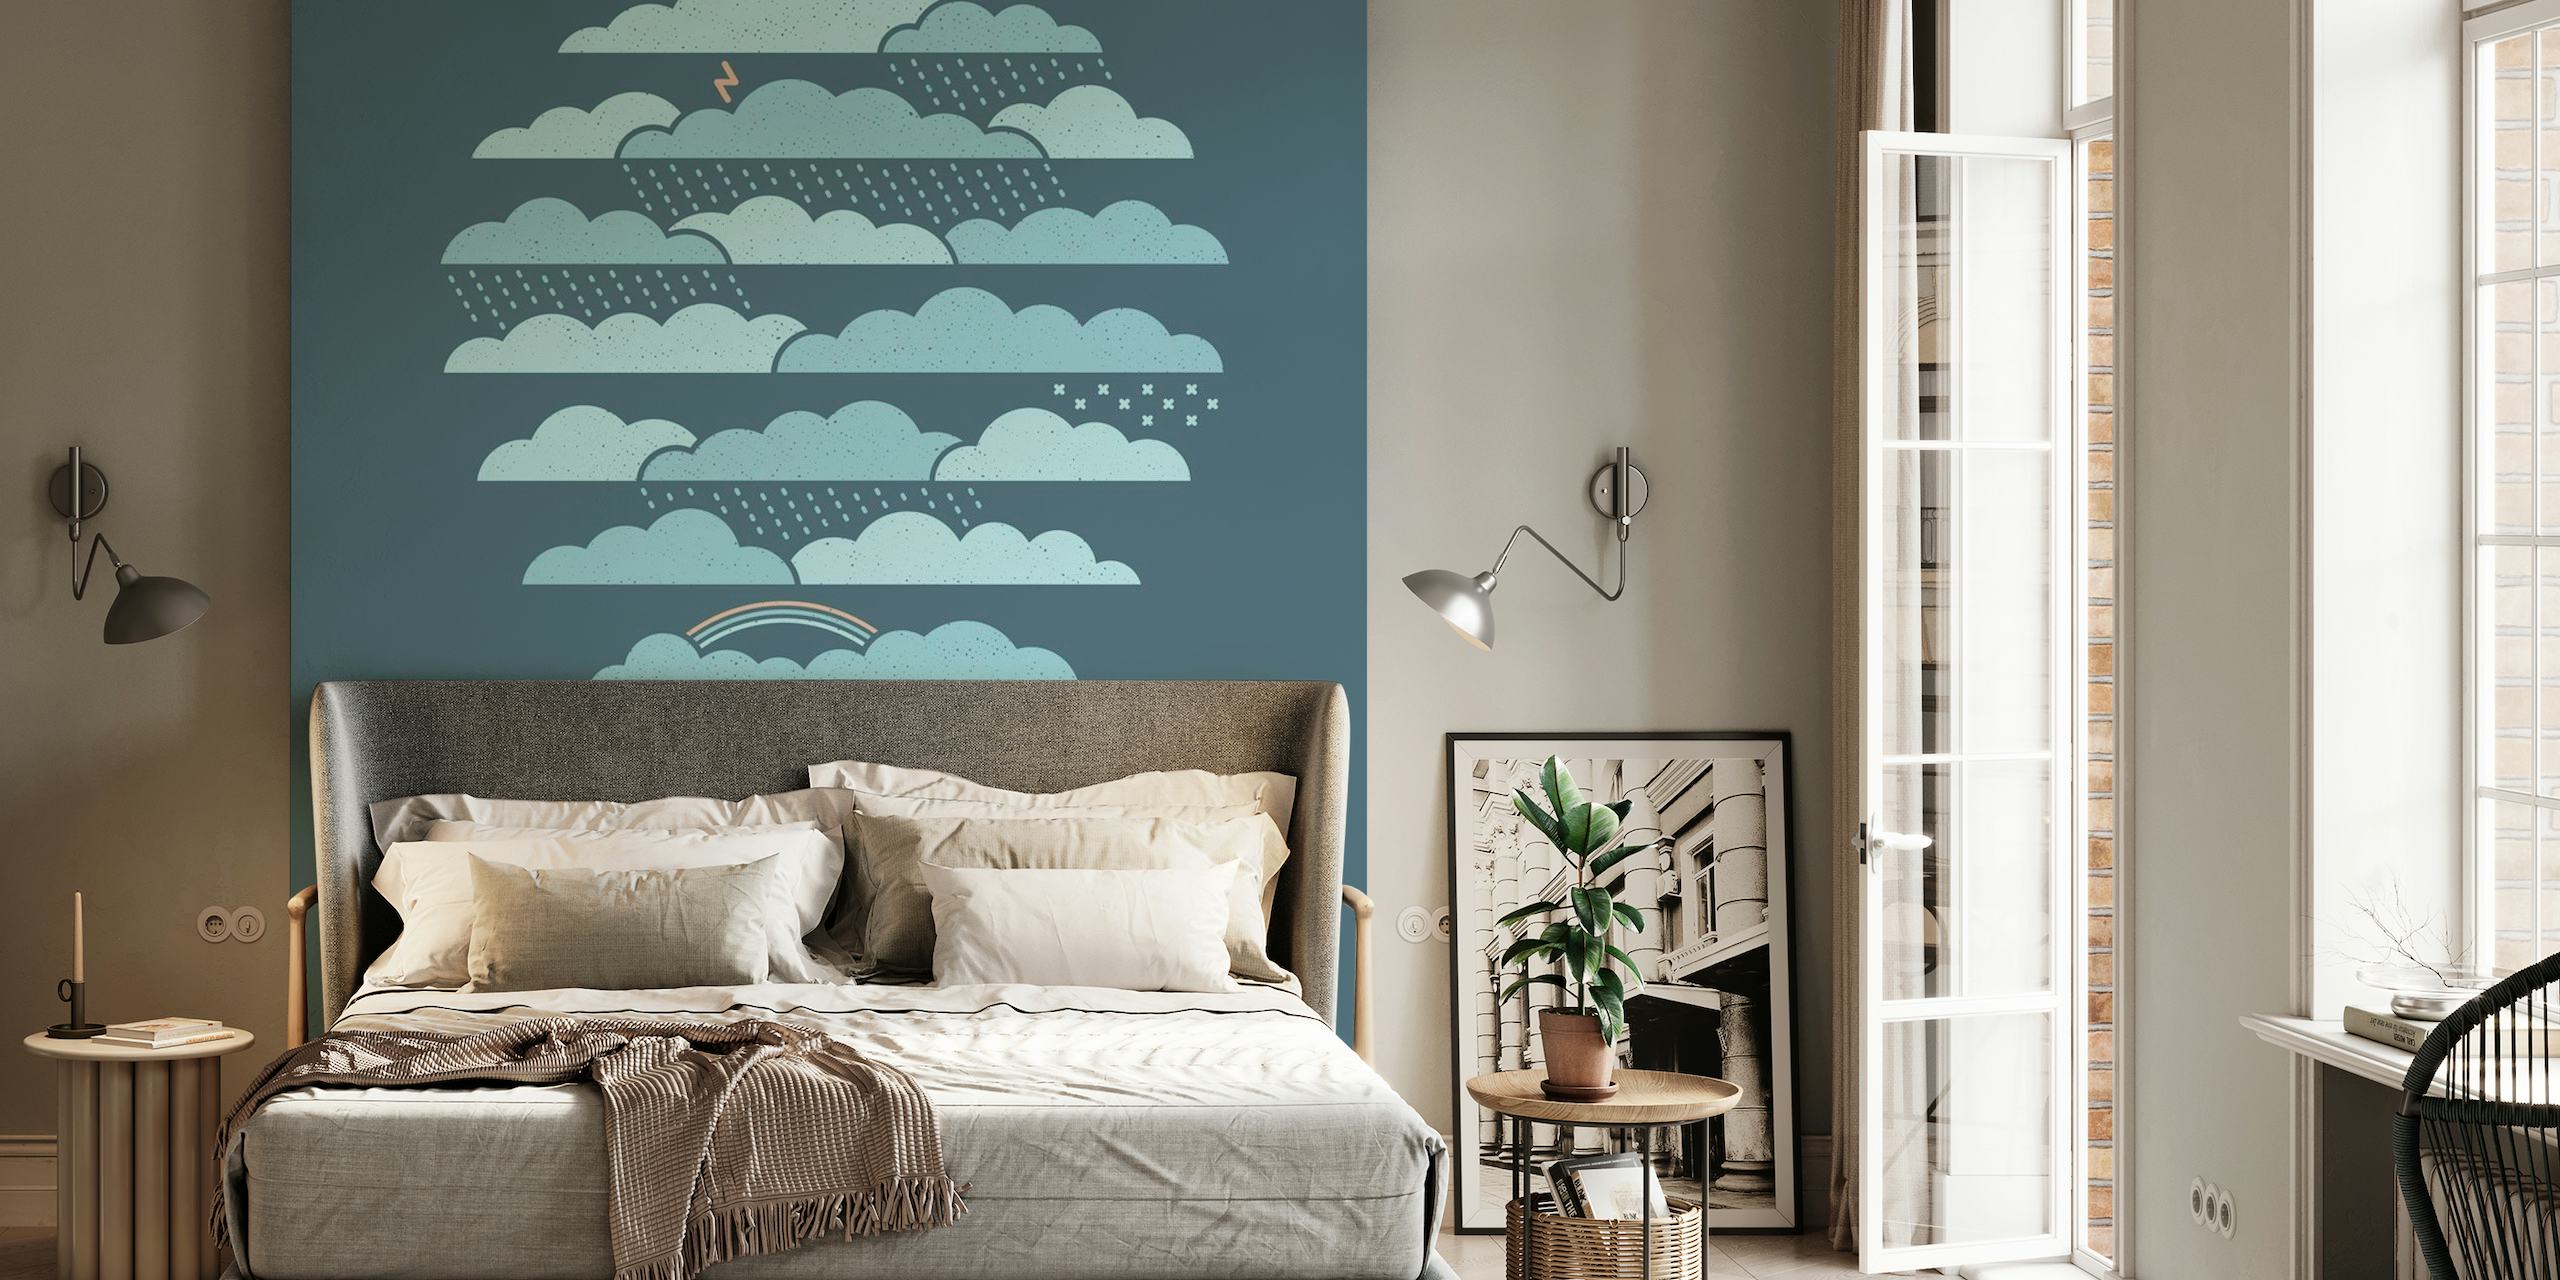 Stiliserad väderballong som svävar bland skiktade moln i nyanser av blå väggmålning